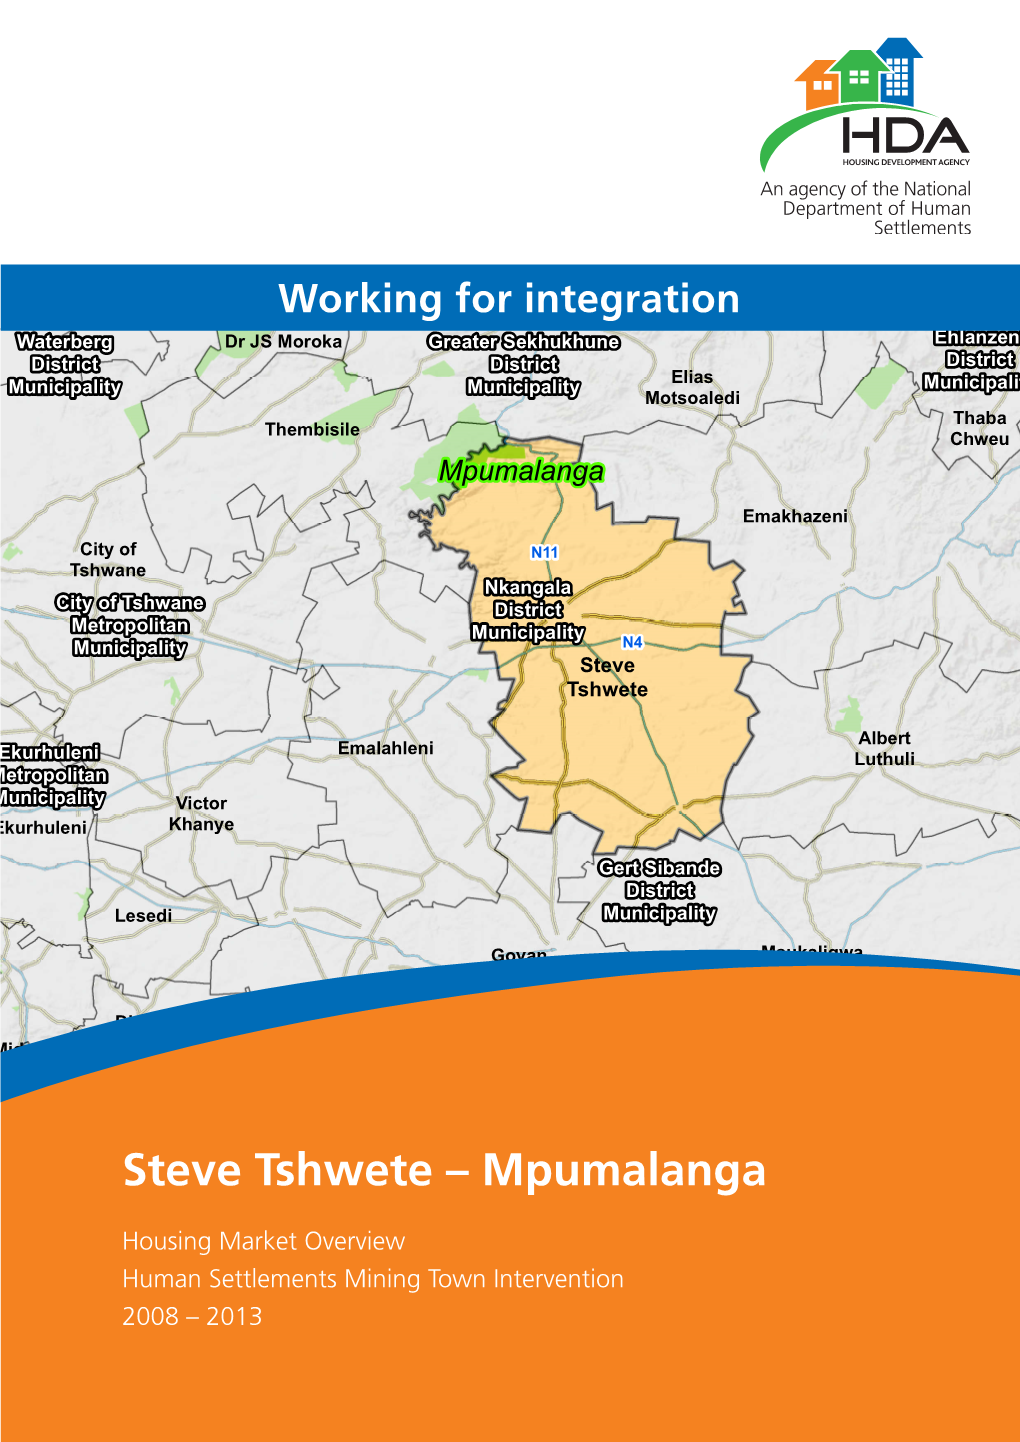 Steve Tshwete – Mpumalanga